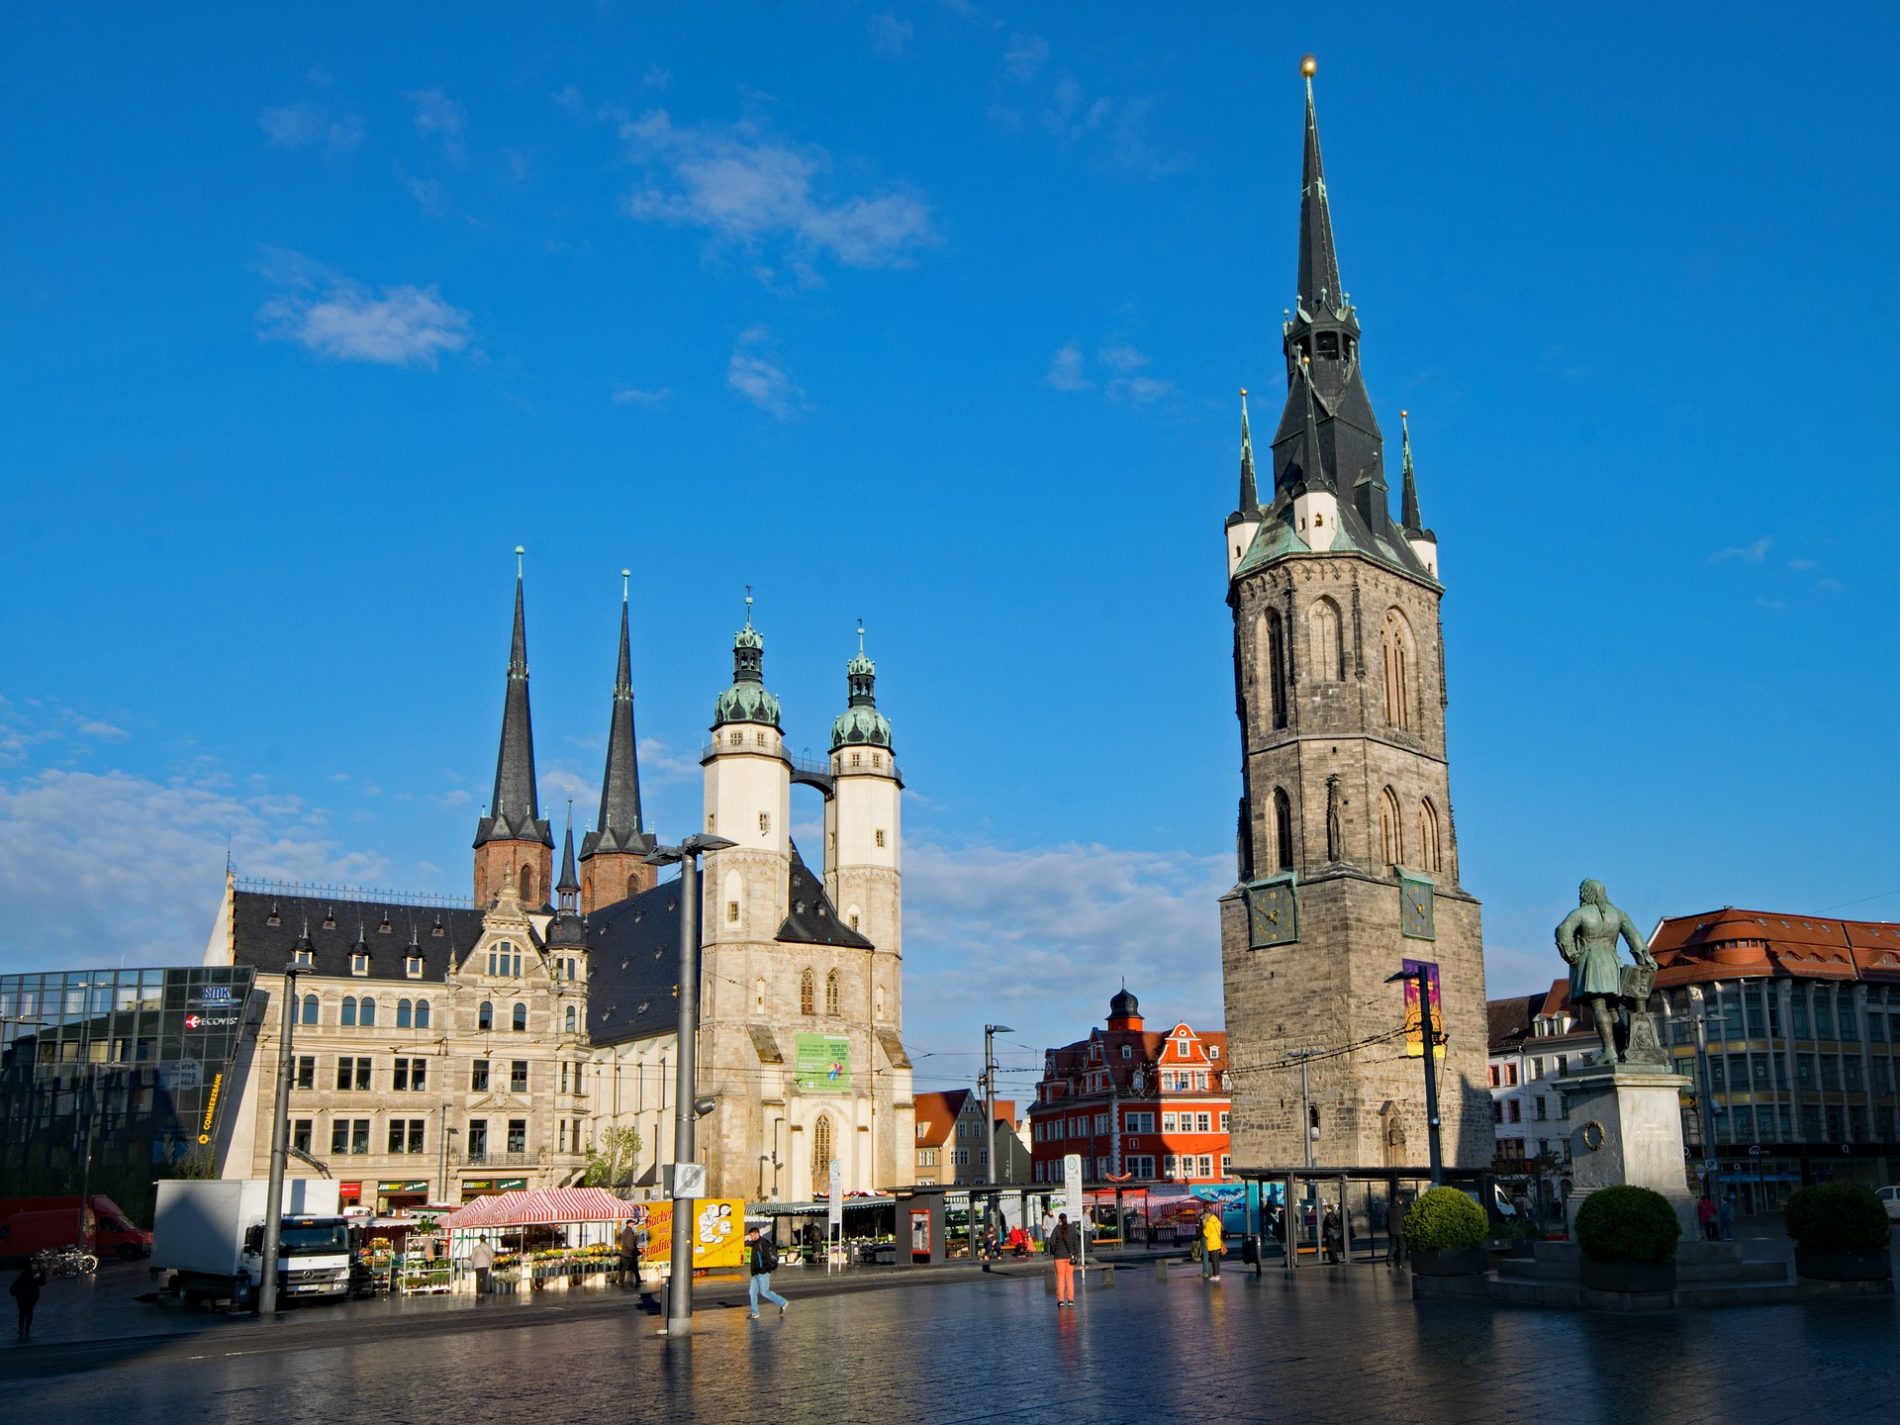 Roter Turm (benannt nach den Blutgerichten, die dort im Mittelalter abgehalten wurden) und Rolandstatue, Markt Halle (Saale).